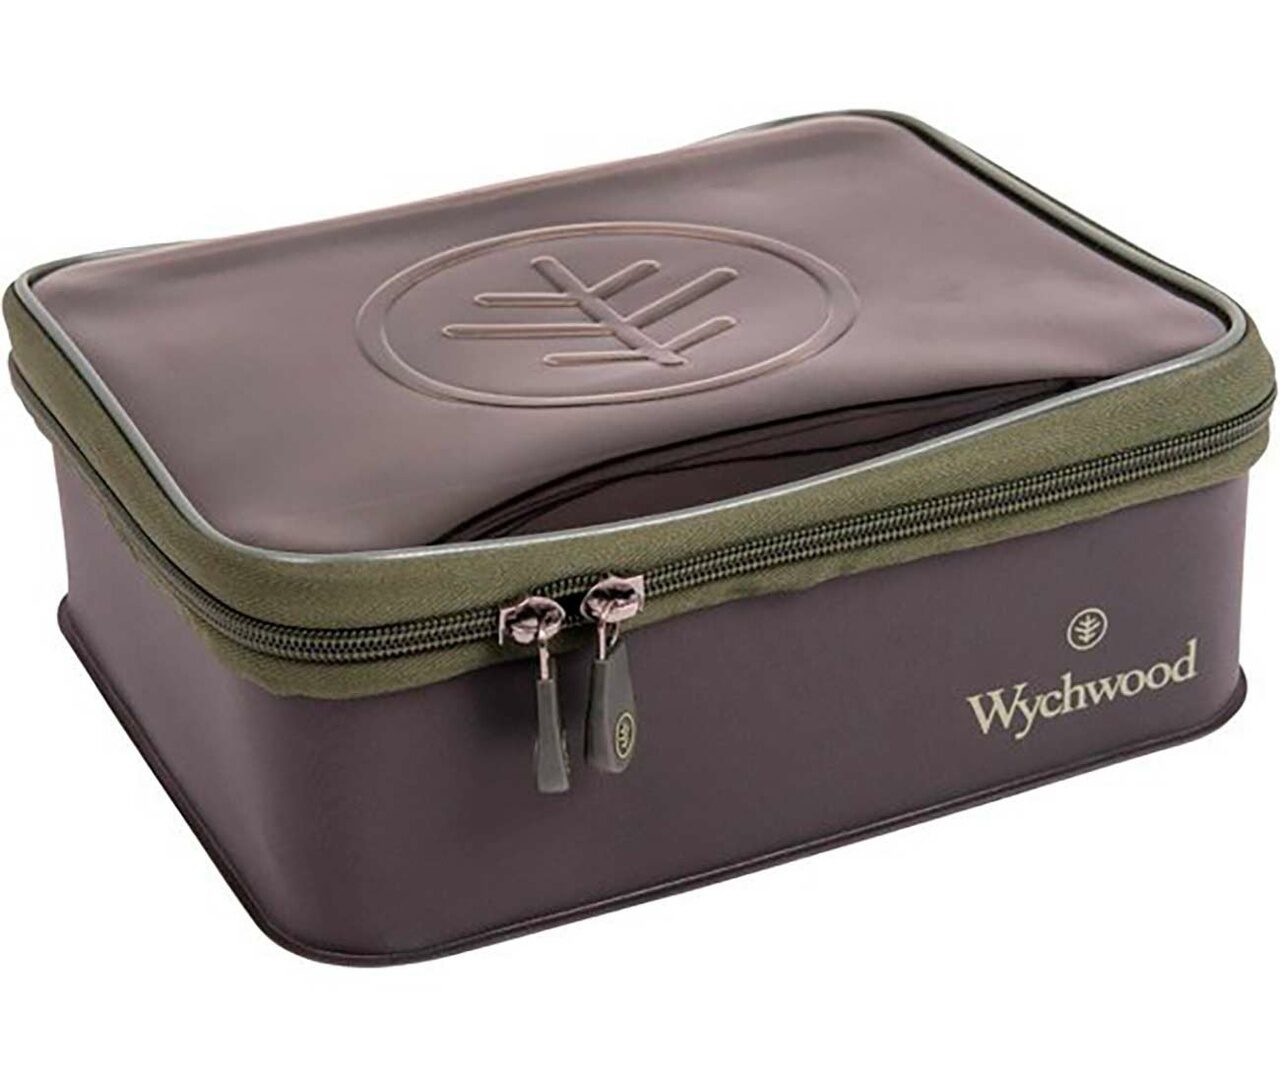 Сумка для аксессуаров Очень Большая Wychwood (Вичвуд) - EVA Accessory Bag XLarge